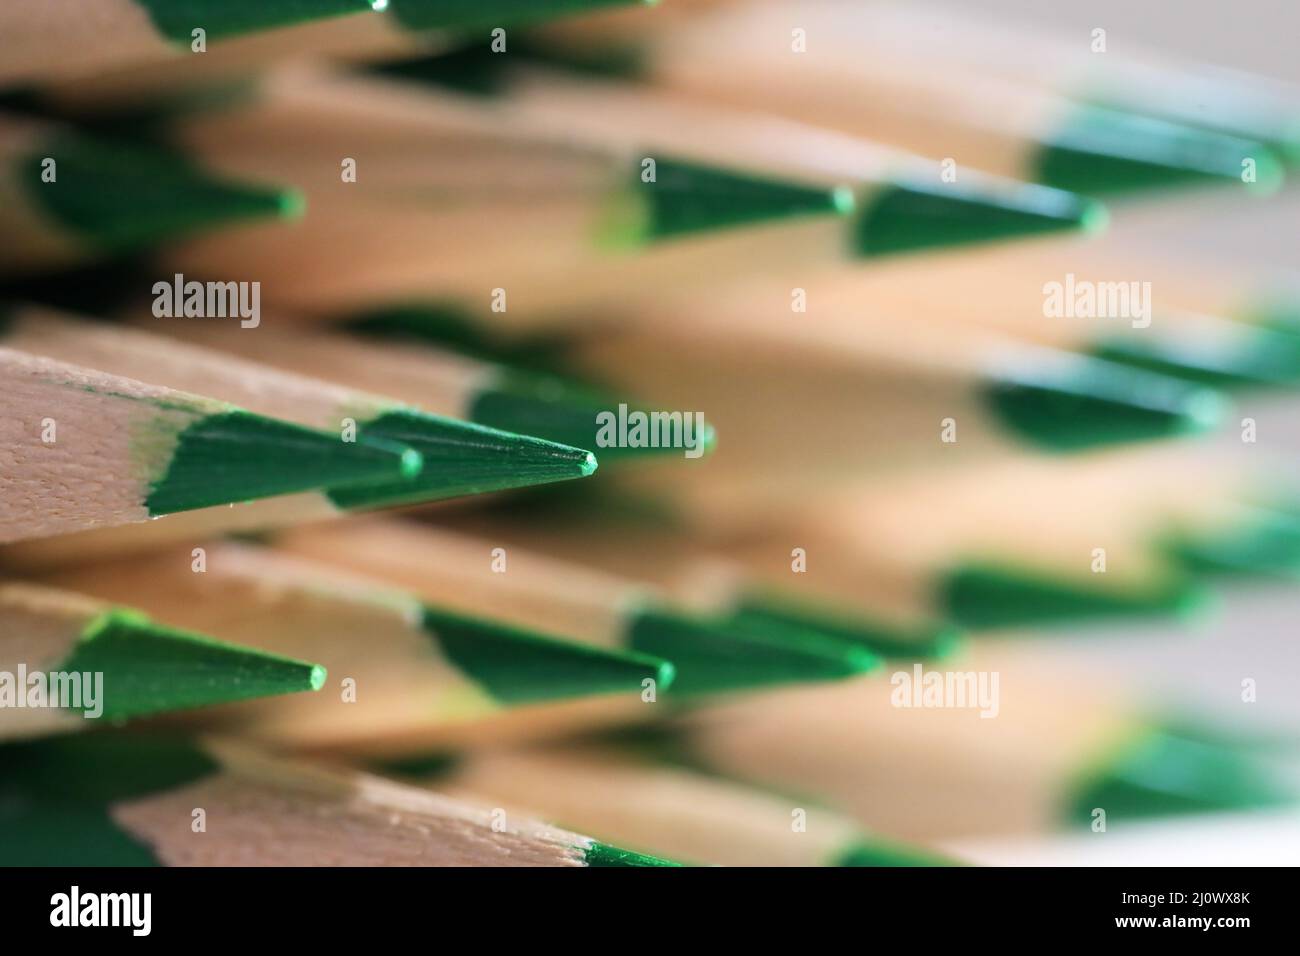 Una disposición de lápices de color verde claro y afilado con una profundidad de campo poco profunda. Foto de stock